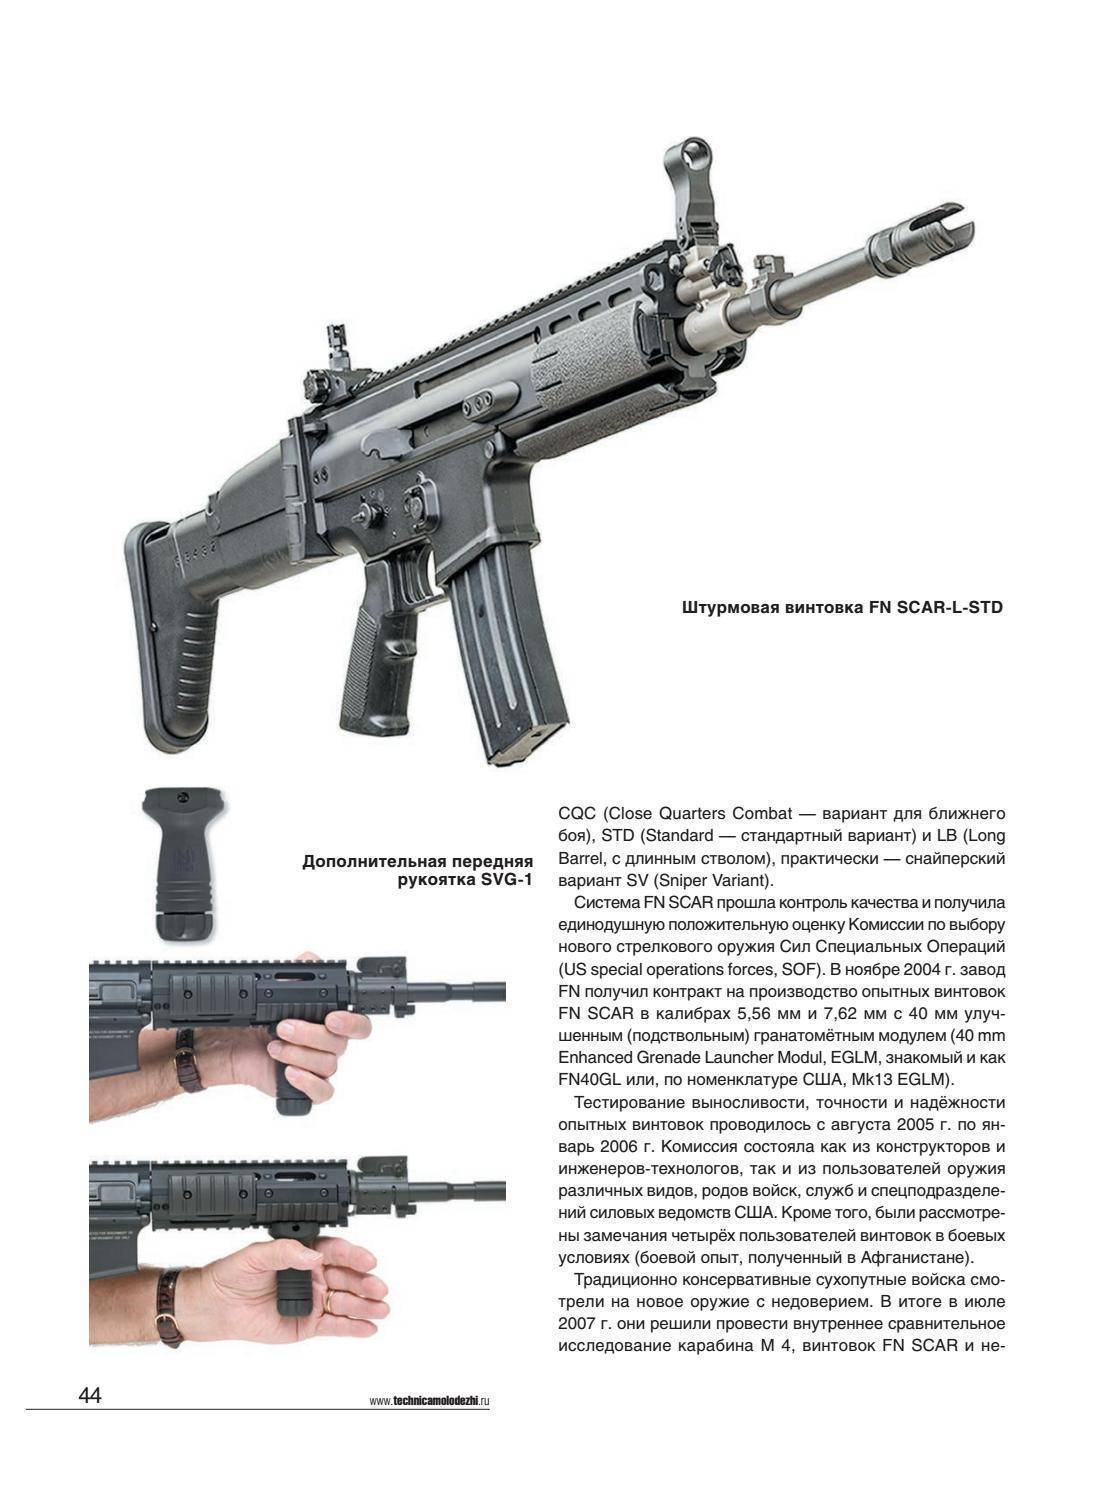 Pof-usa винтовка — характеристики, фото, ттх